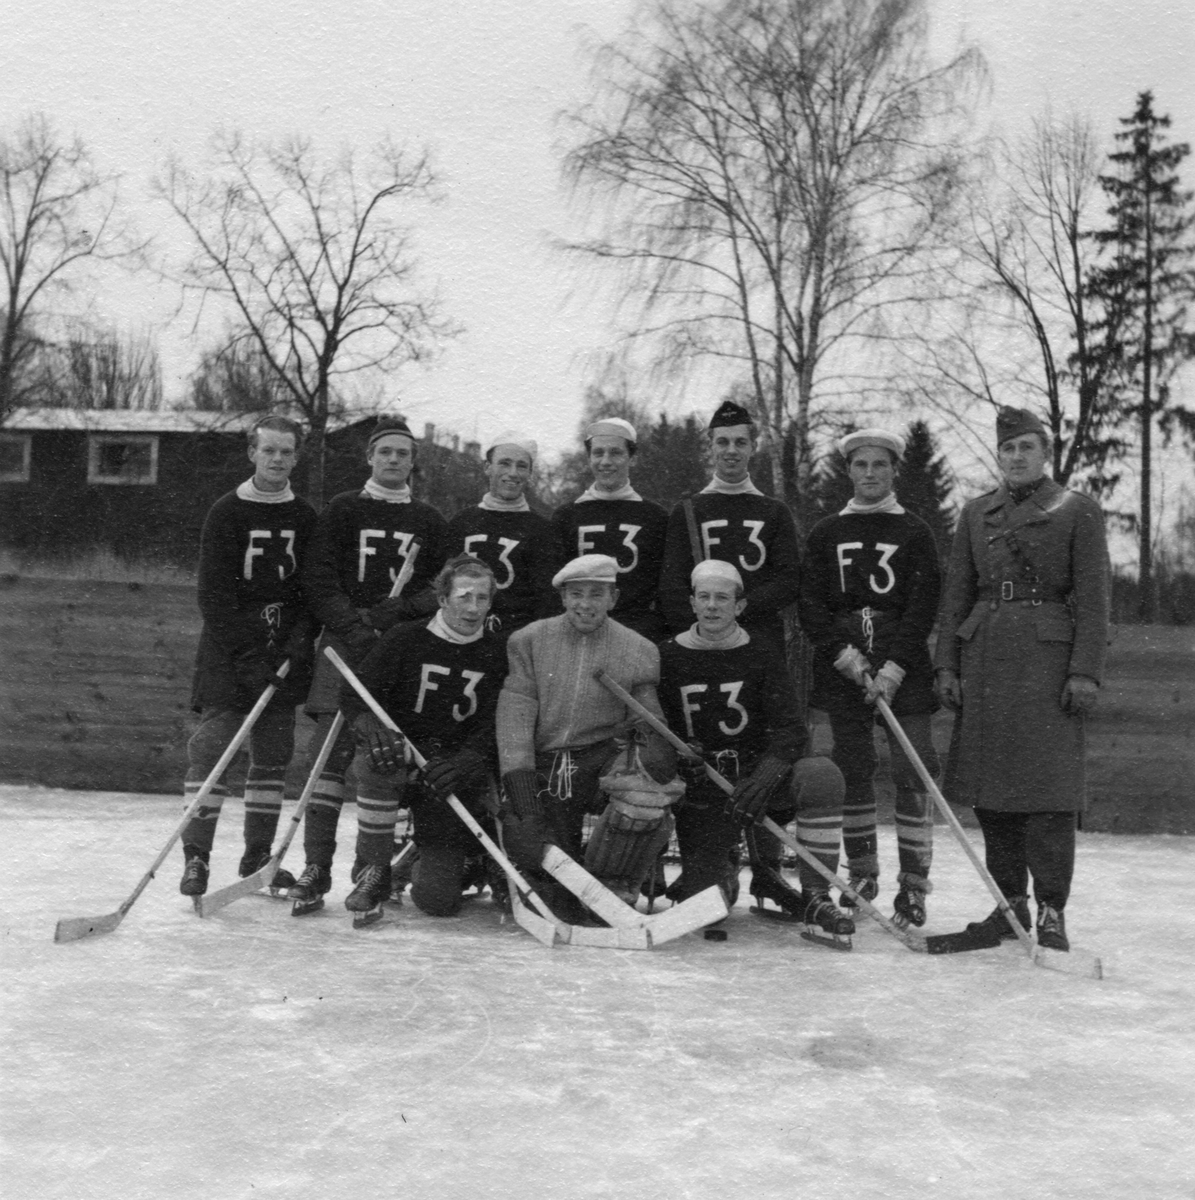 Hockeylaget på F 3 Östgöta flygflottilj. Grupporträtt på isen, tidigt 1940-tal.